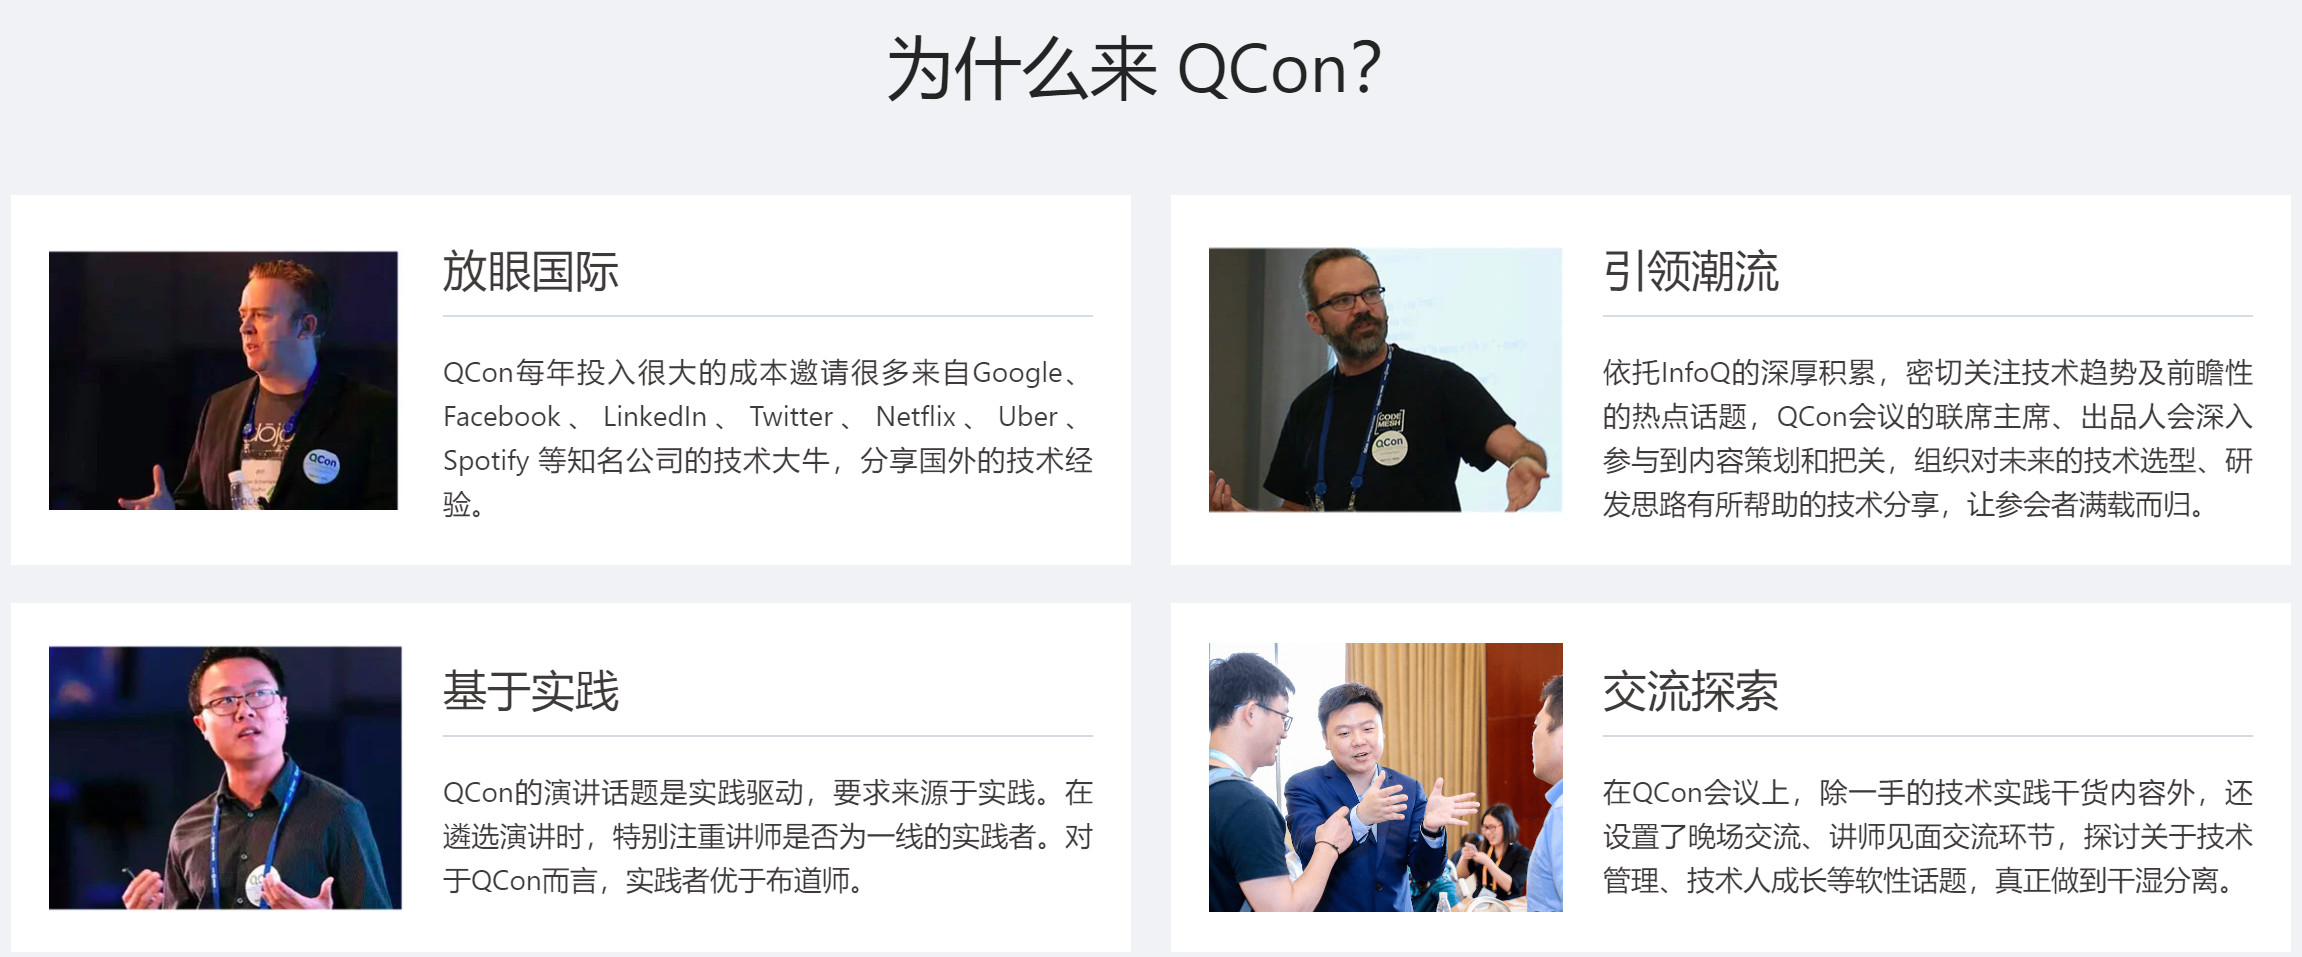 QCon北京2024|全球软件开发大会